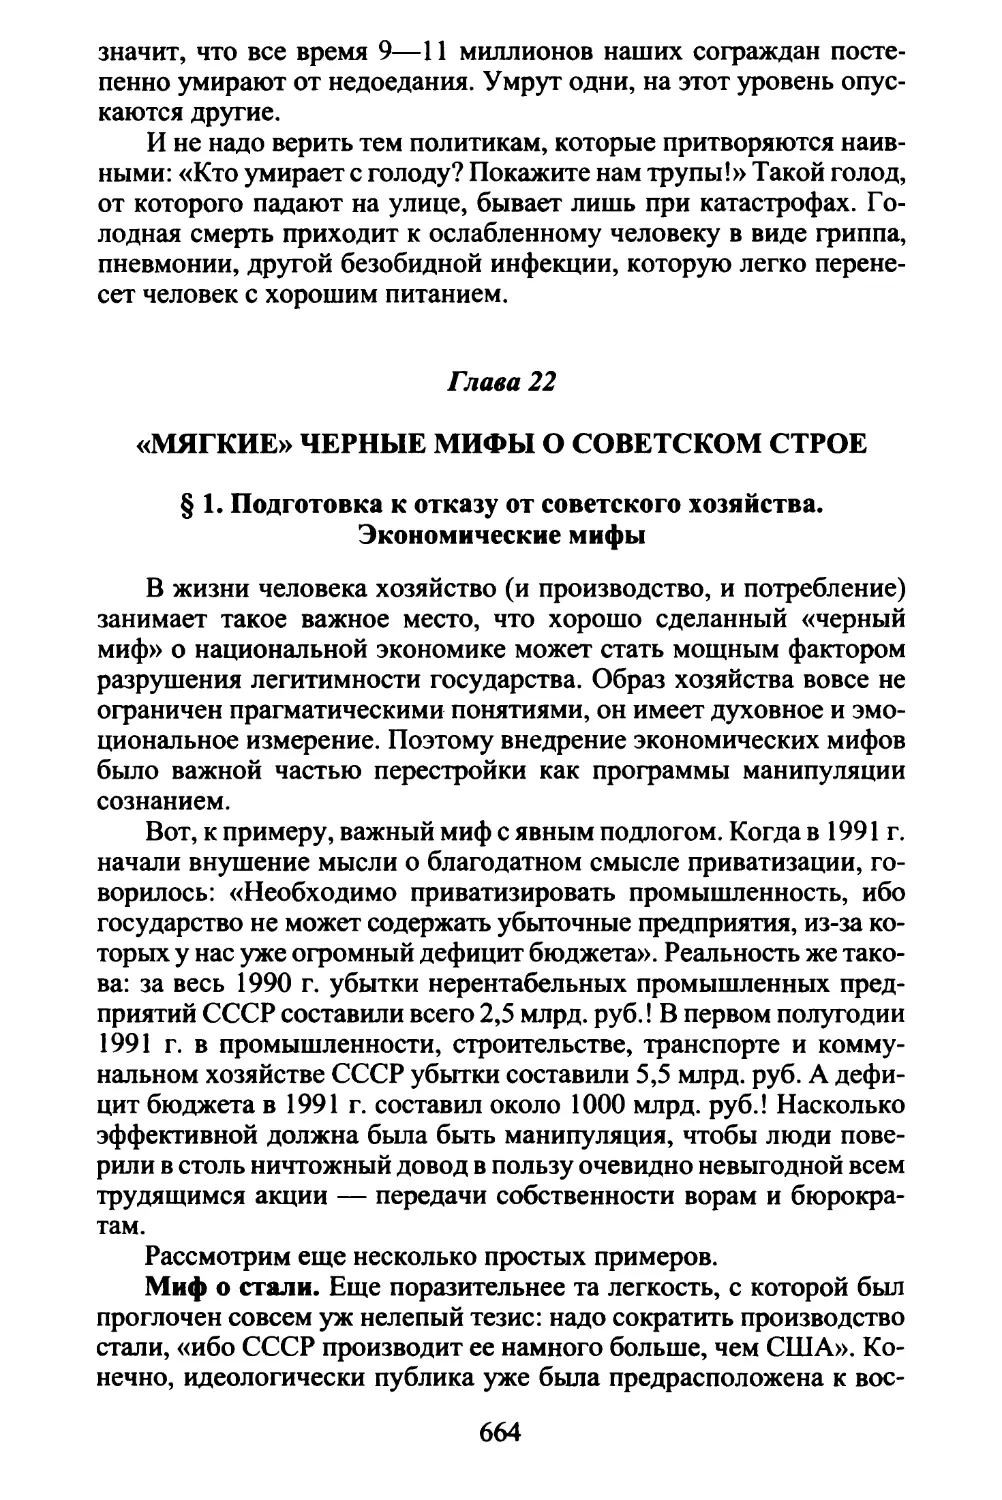 Глава 22. «Мягкие» черные мифы о советском строе